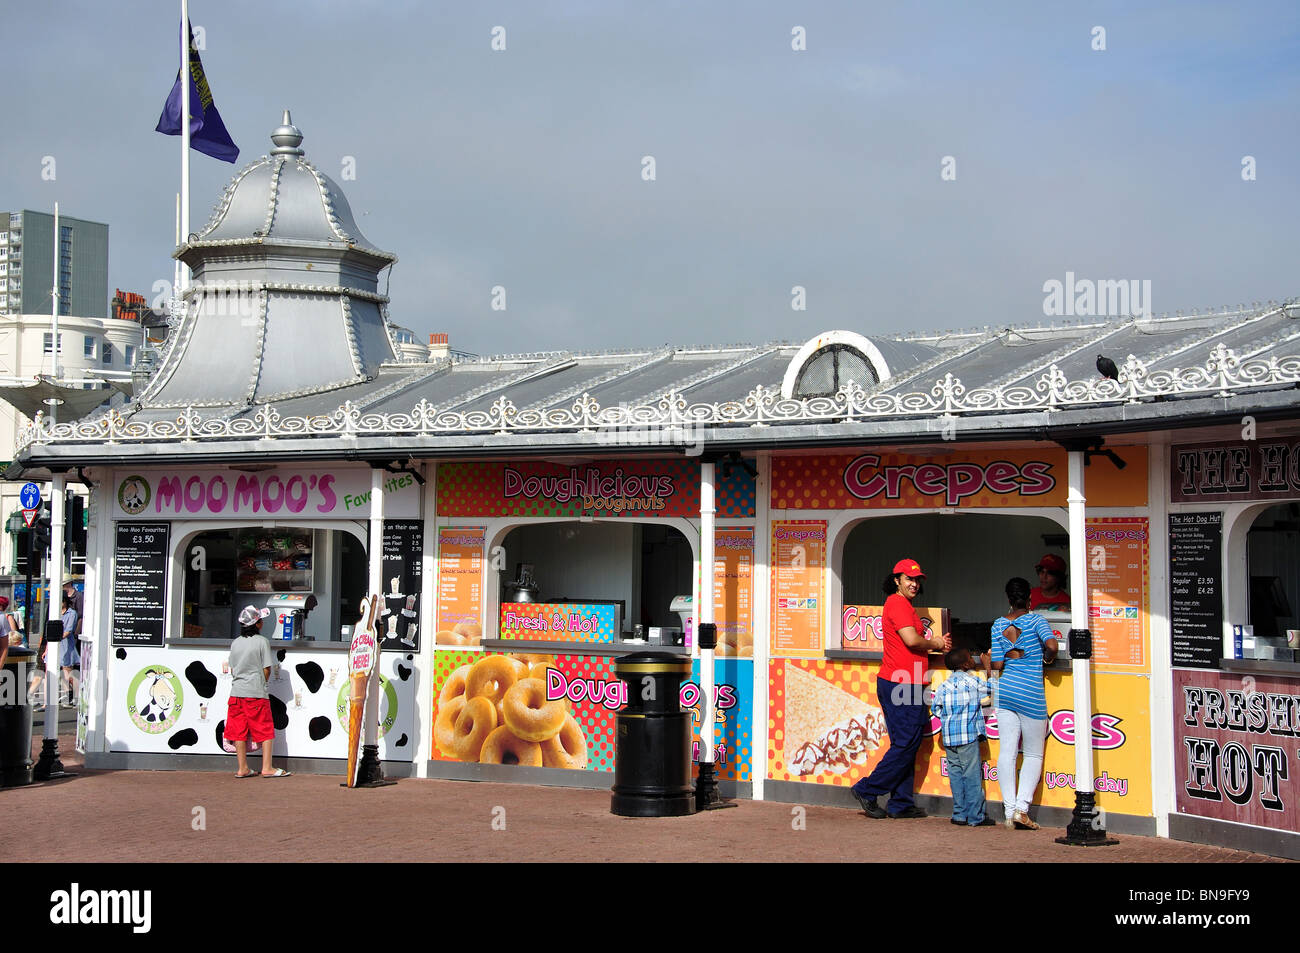 Speisen zum Mitnehmen Automaten am Eingang der Pier, Pier von Brighton, Brighton, East Sussex, England, Vereinigtes Königreich Stockfoto